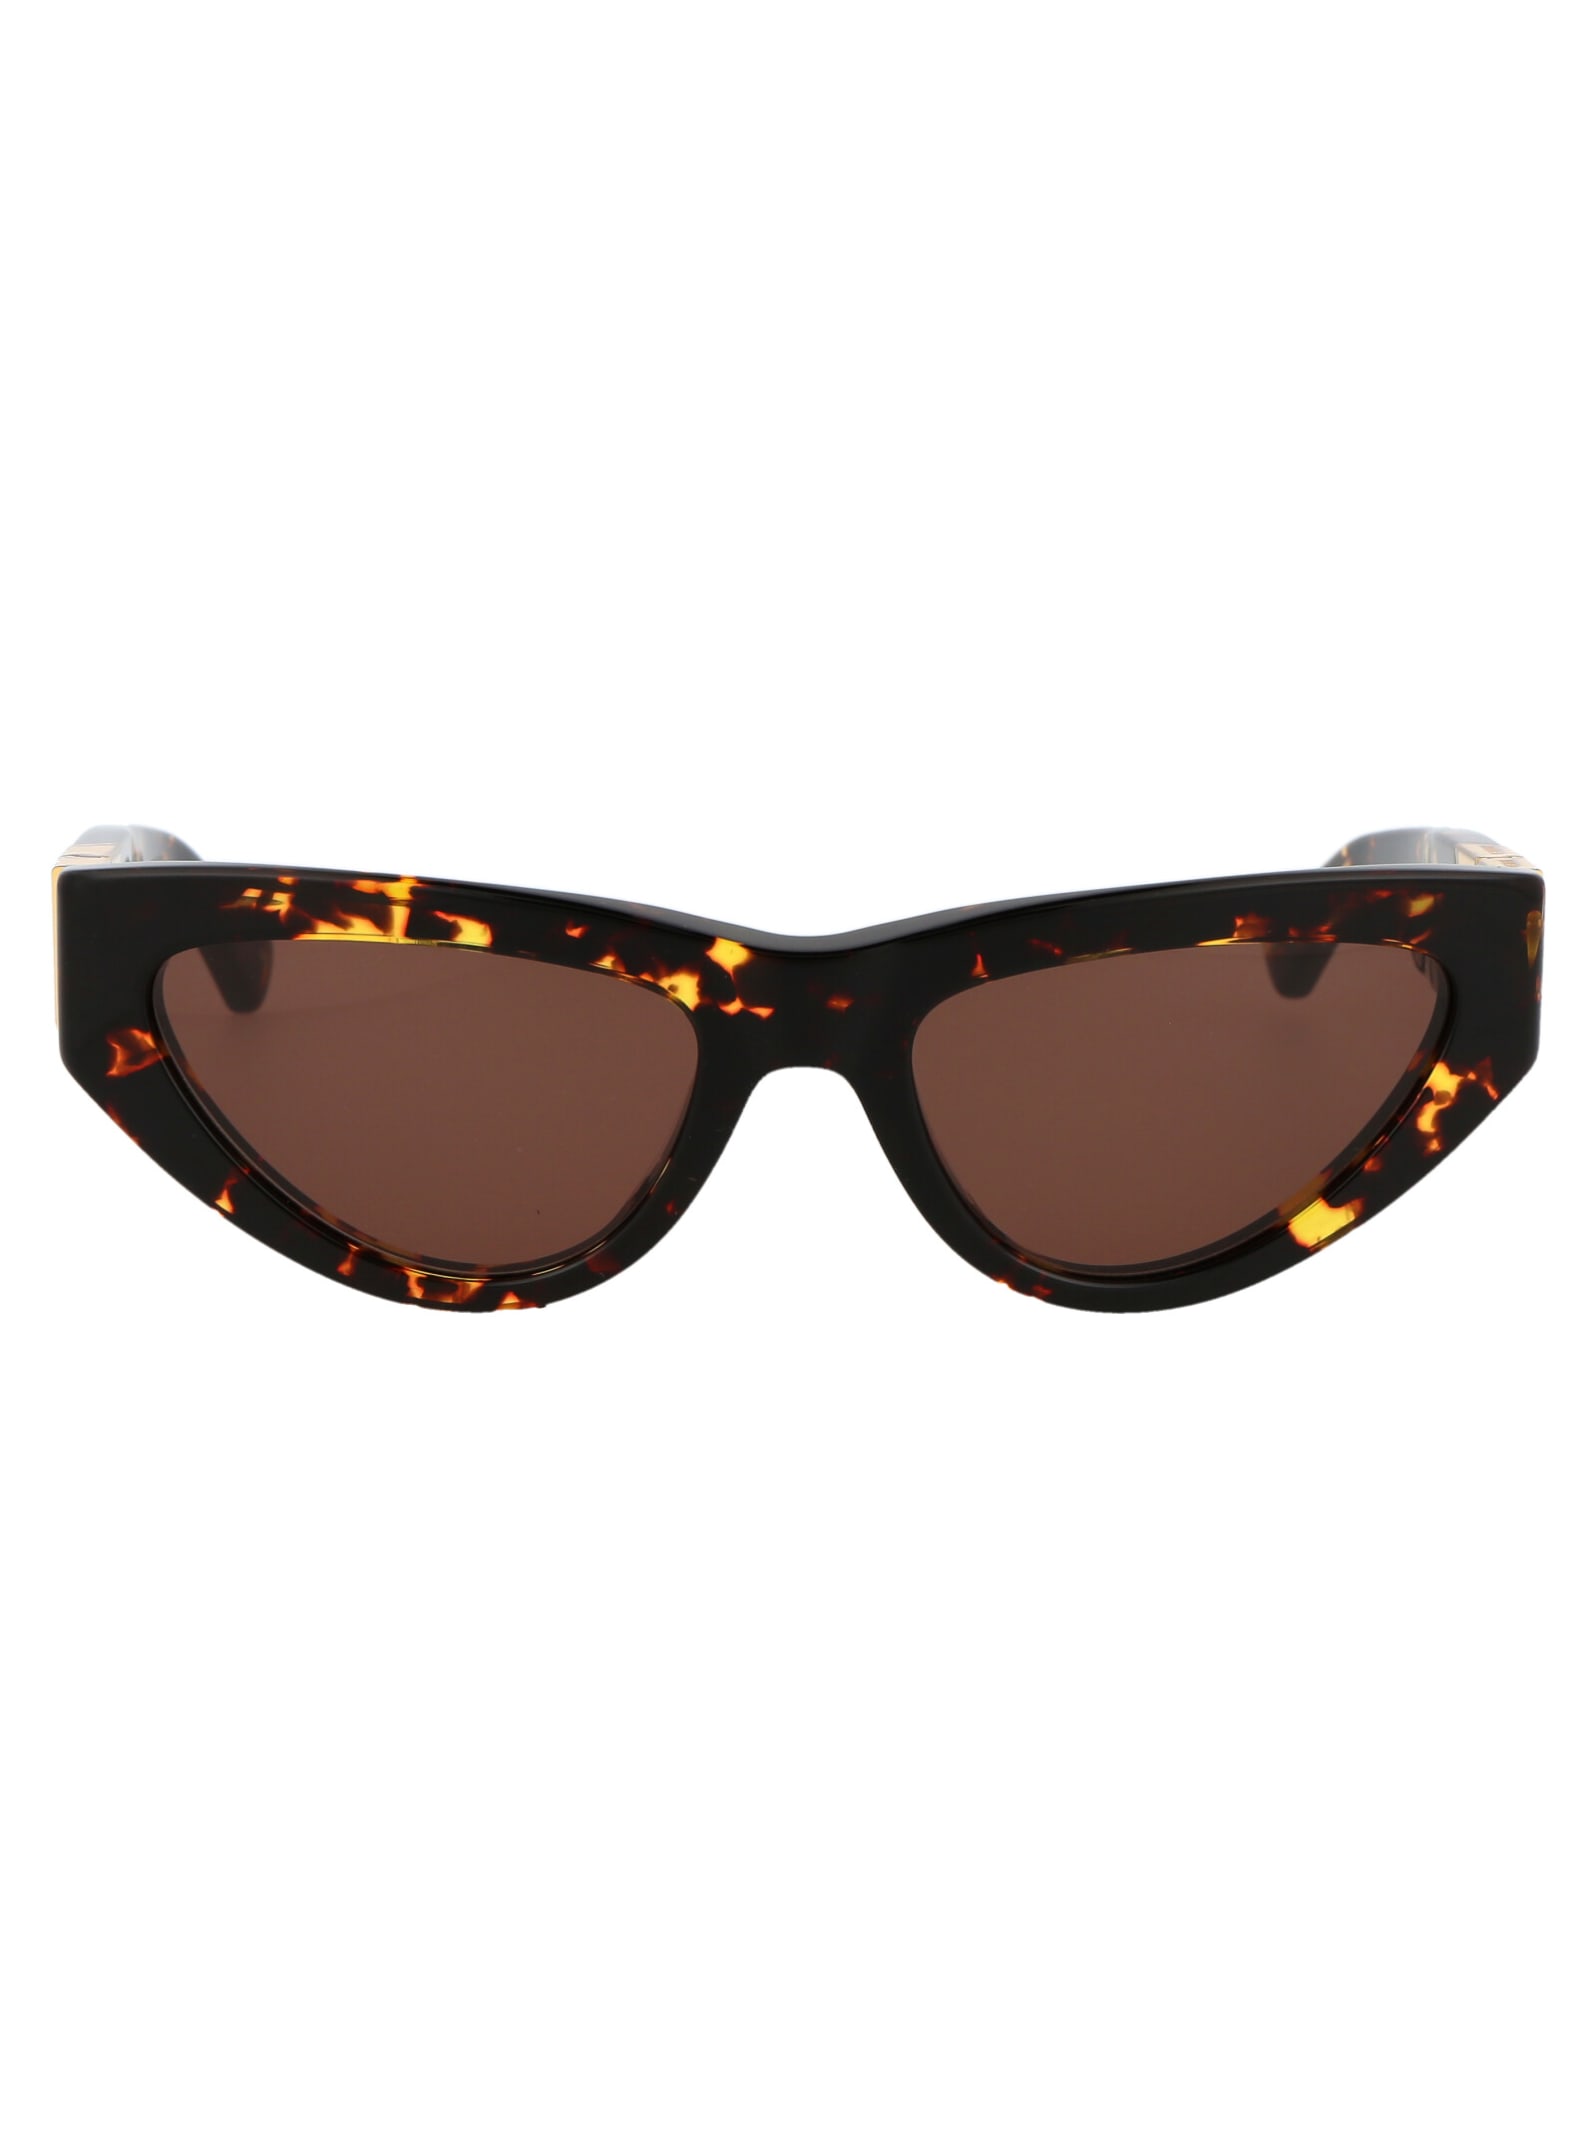 Bv1176s Sunglasses